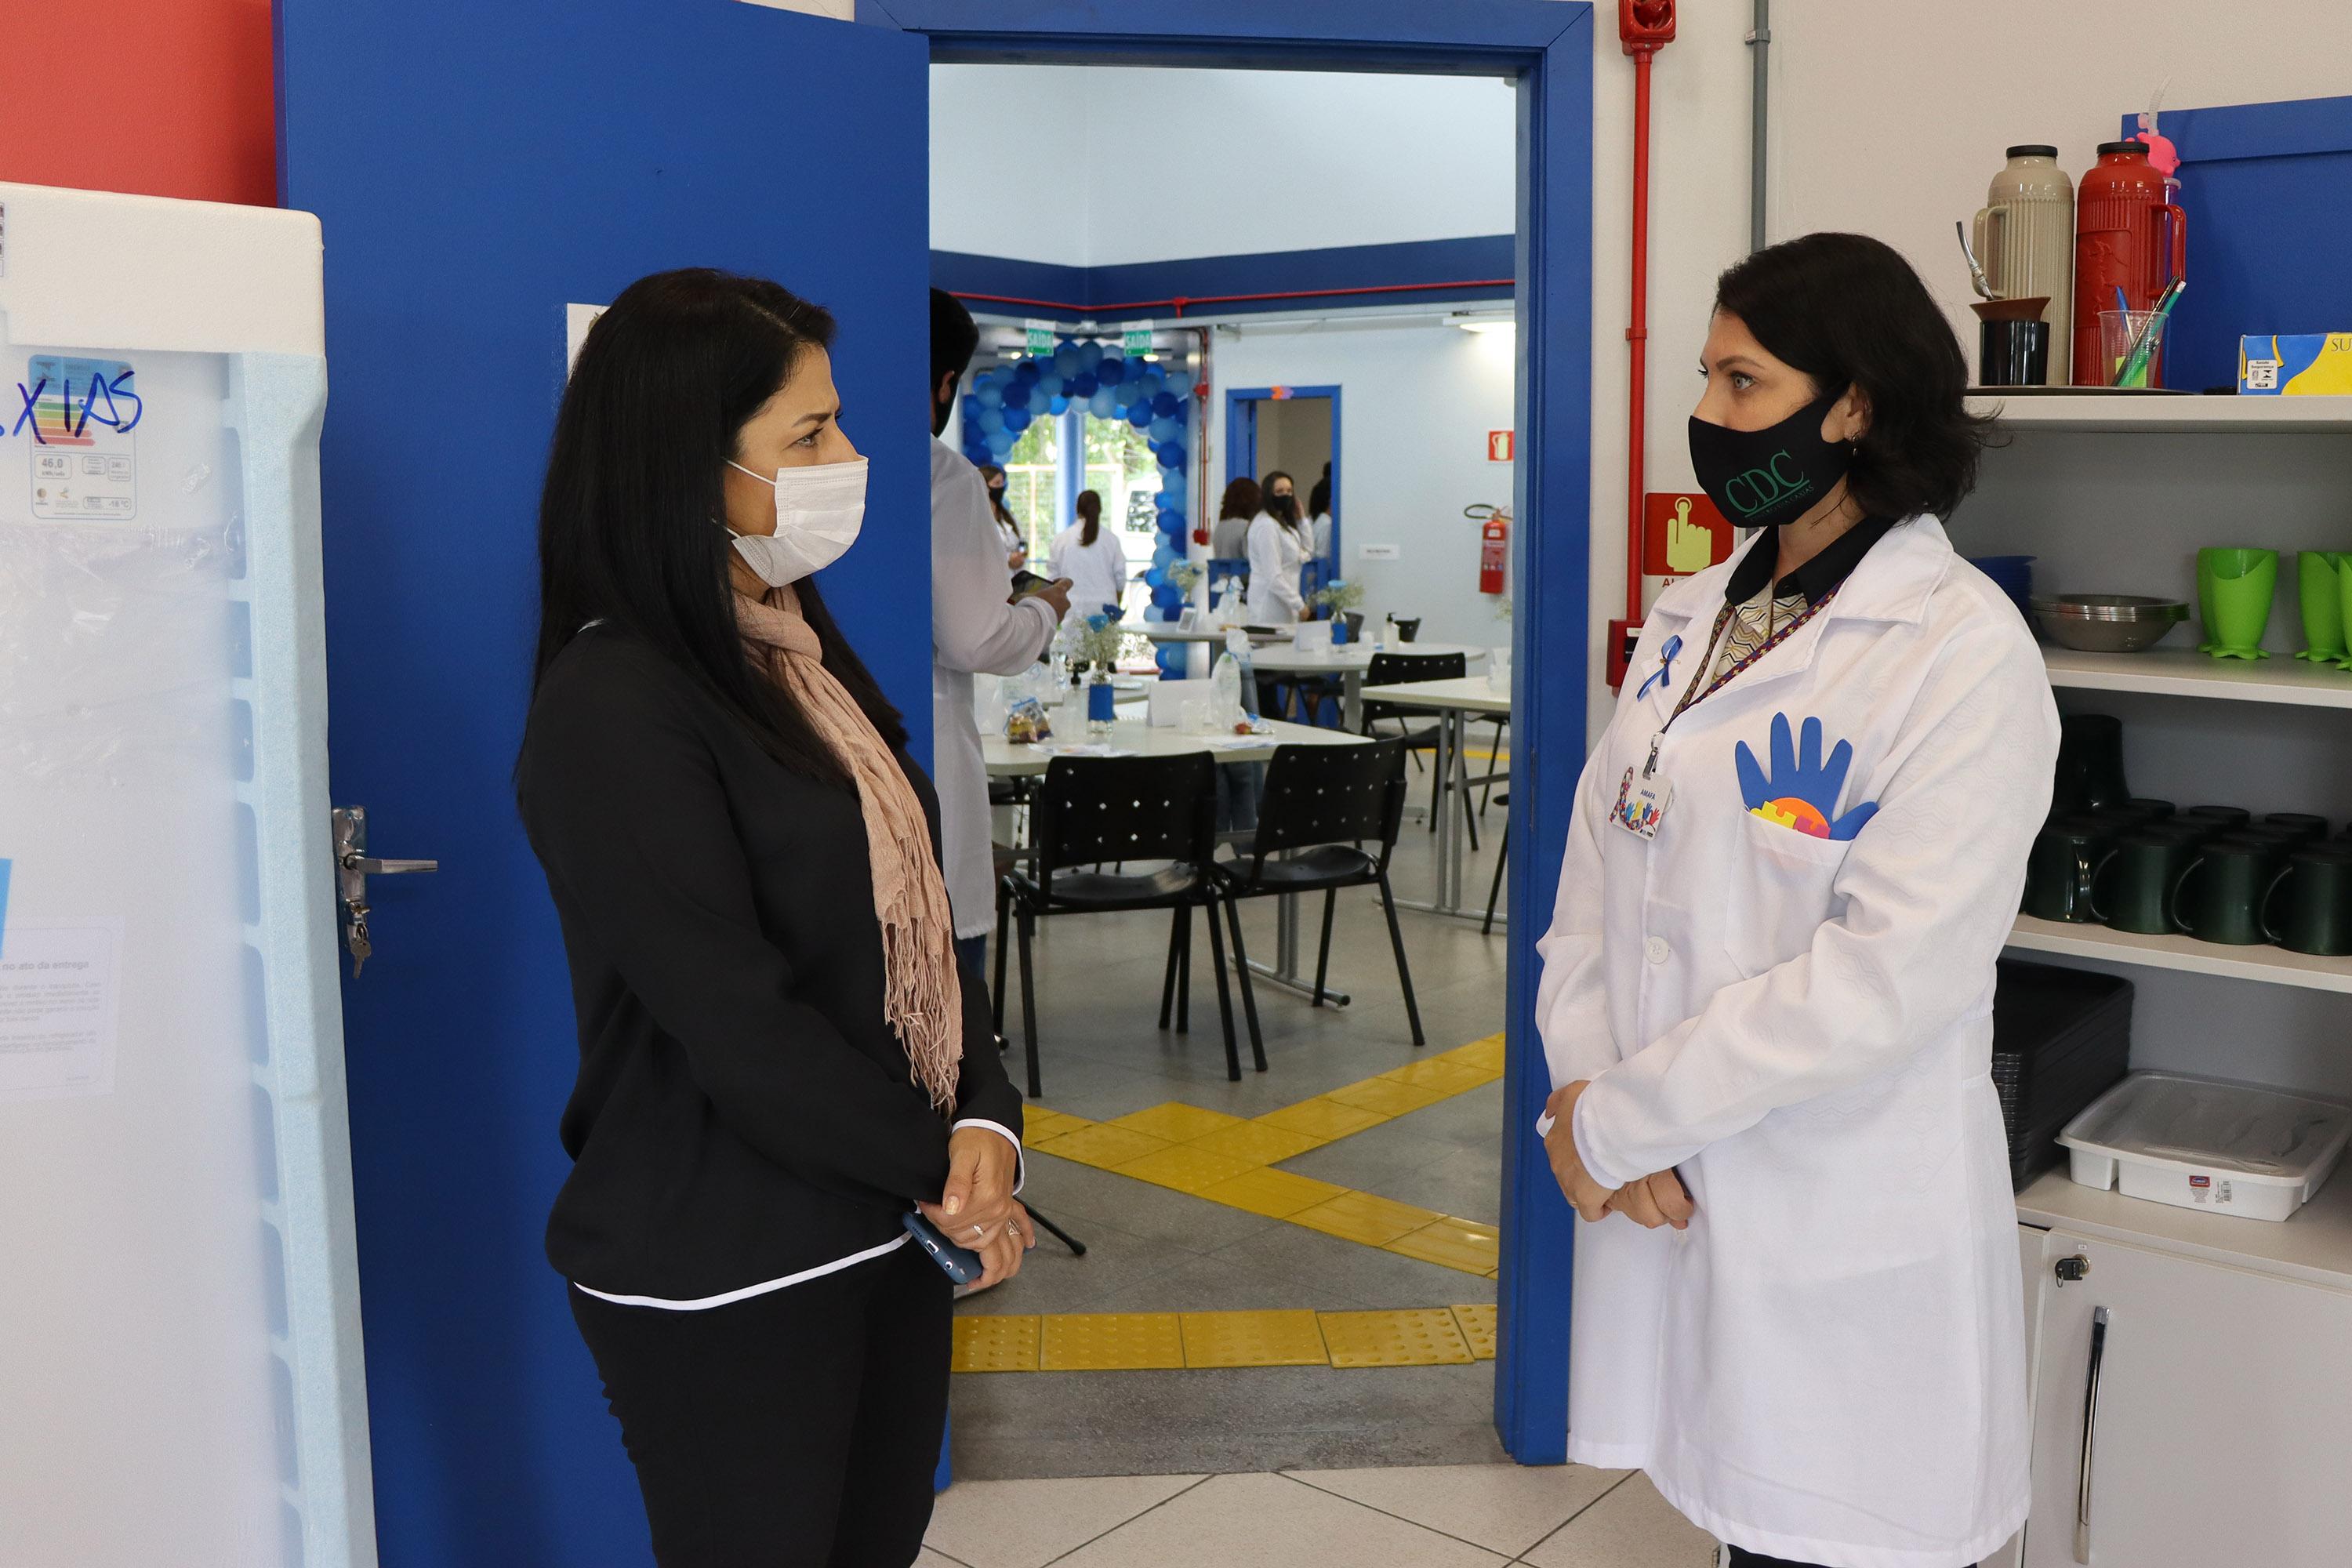 Marisol Santos participa do evento "Caxias Azul, Conscientização do Transtorno do Espectro Autista"